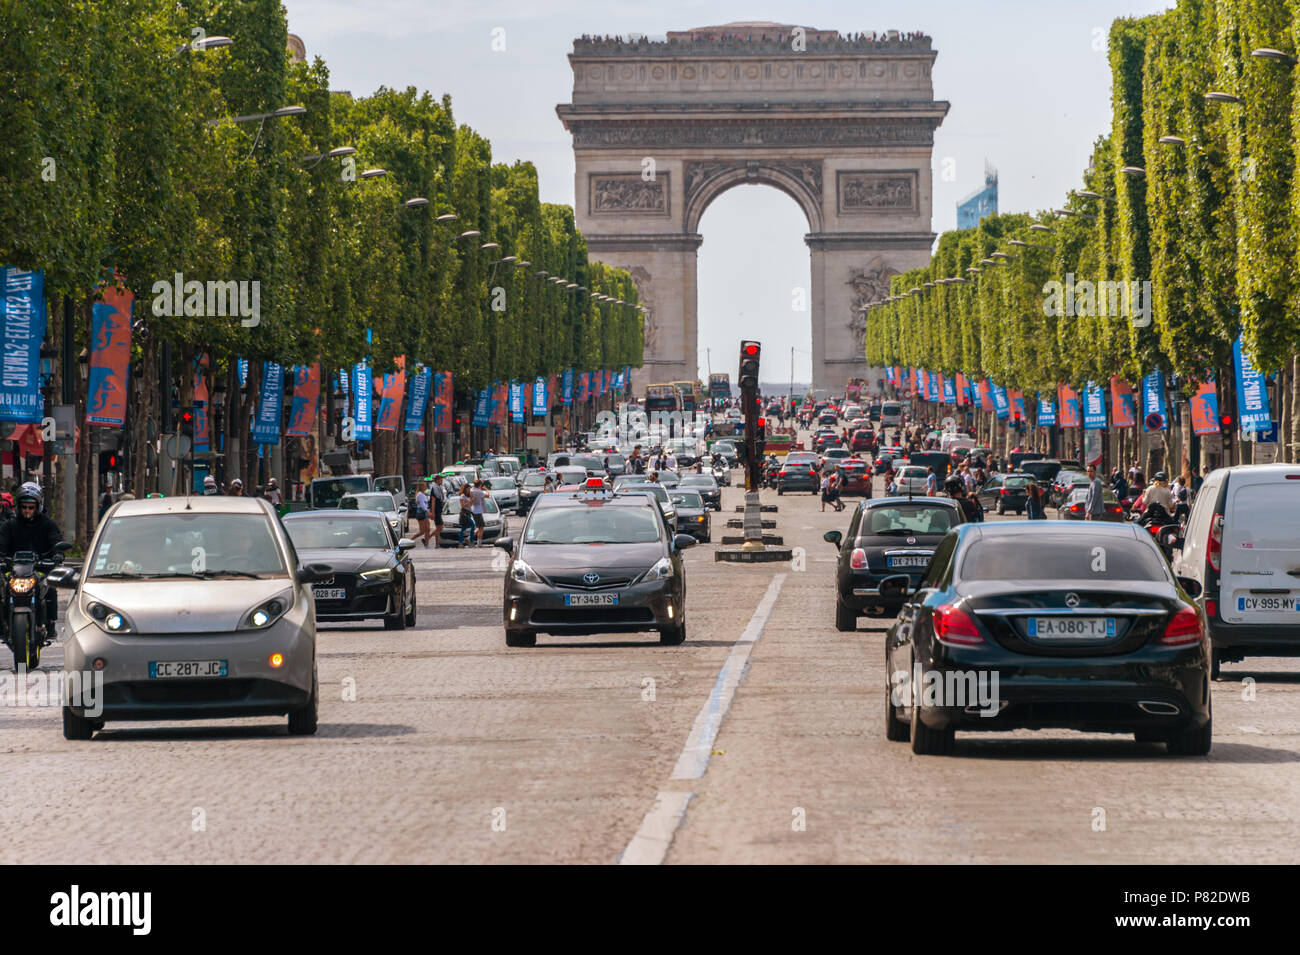 París, Francia - 23 de junio de 2018: el tráfico hacia abajo de la Avenida de los Campos Elíseos y del Arco de Triunfo. Foto de stock